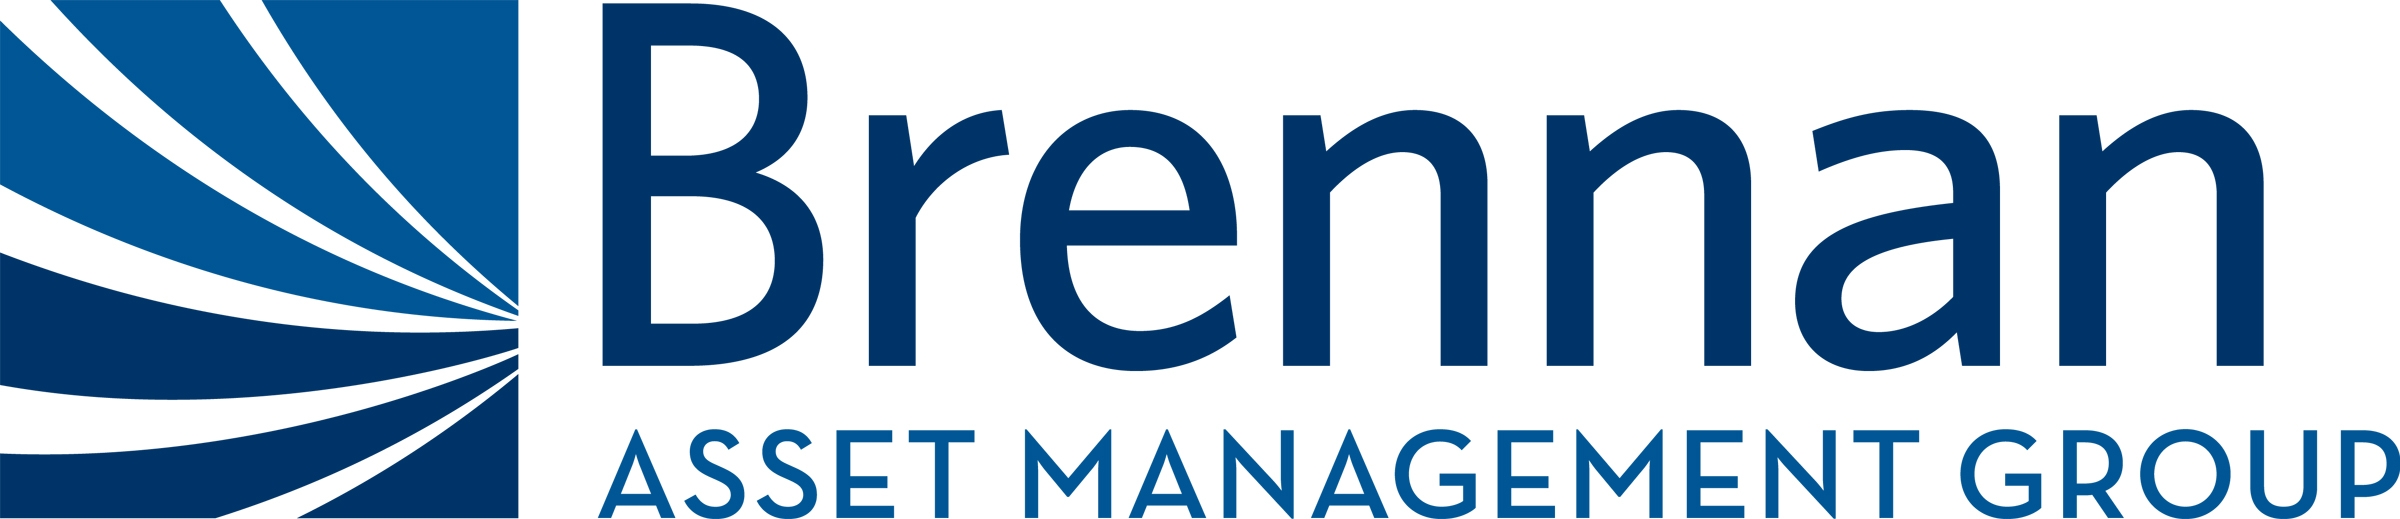 brennan asset management group logo